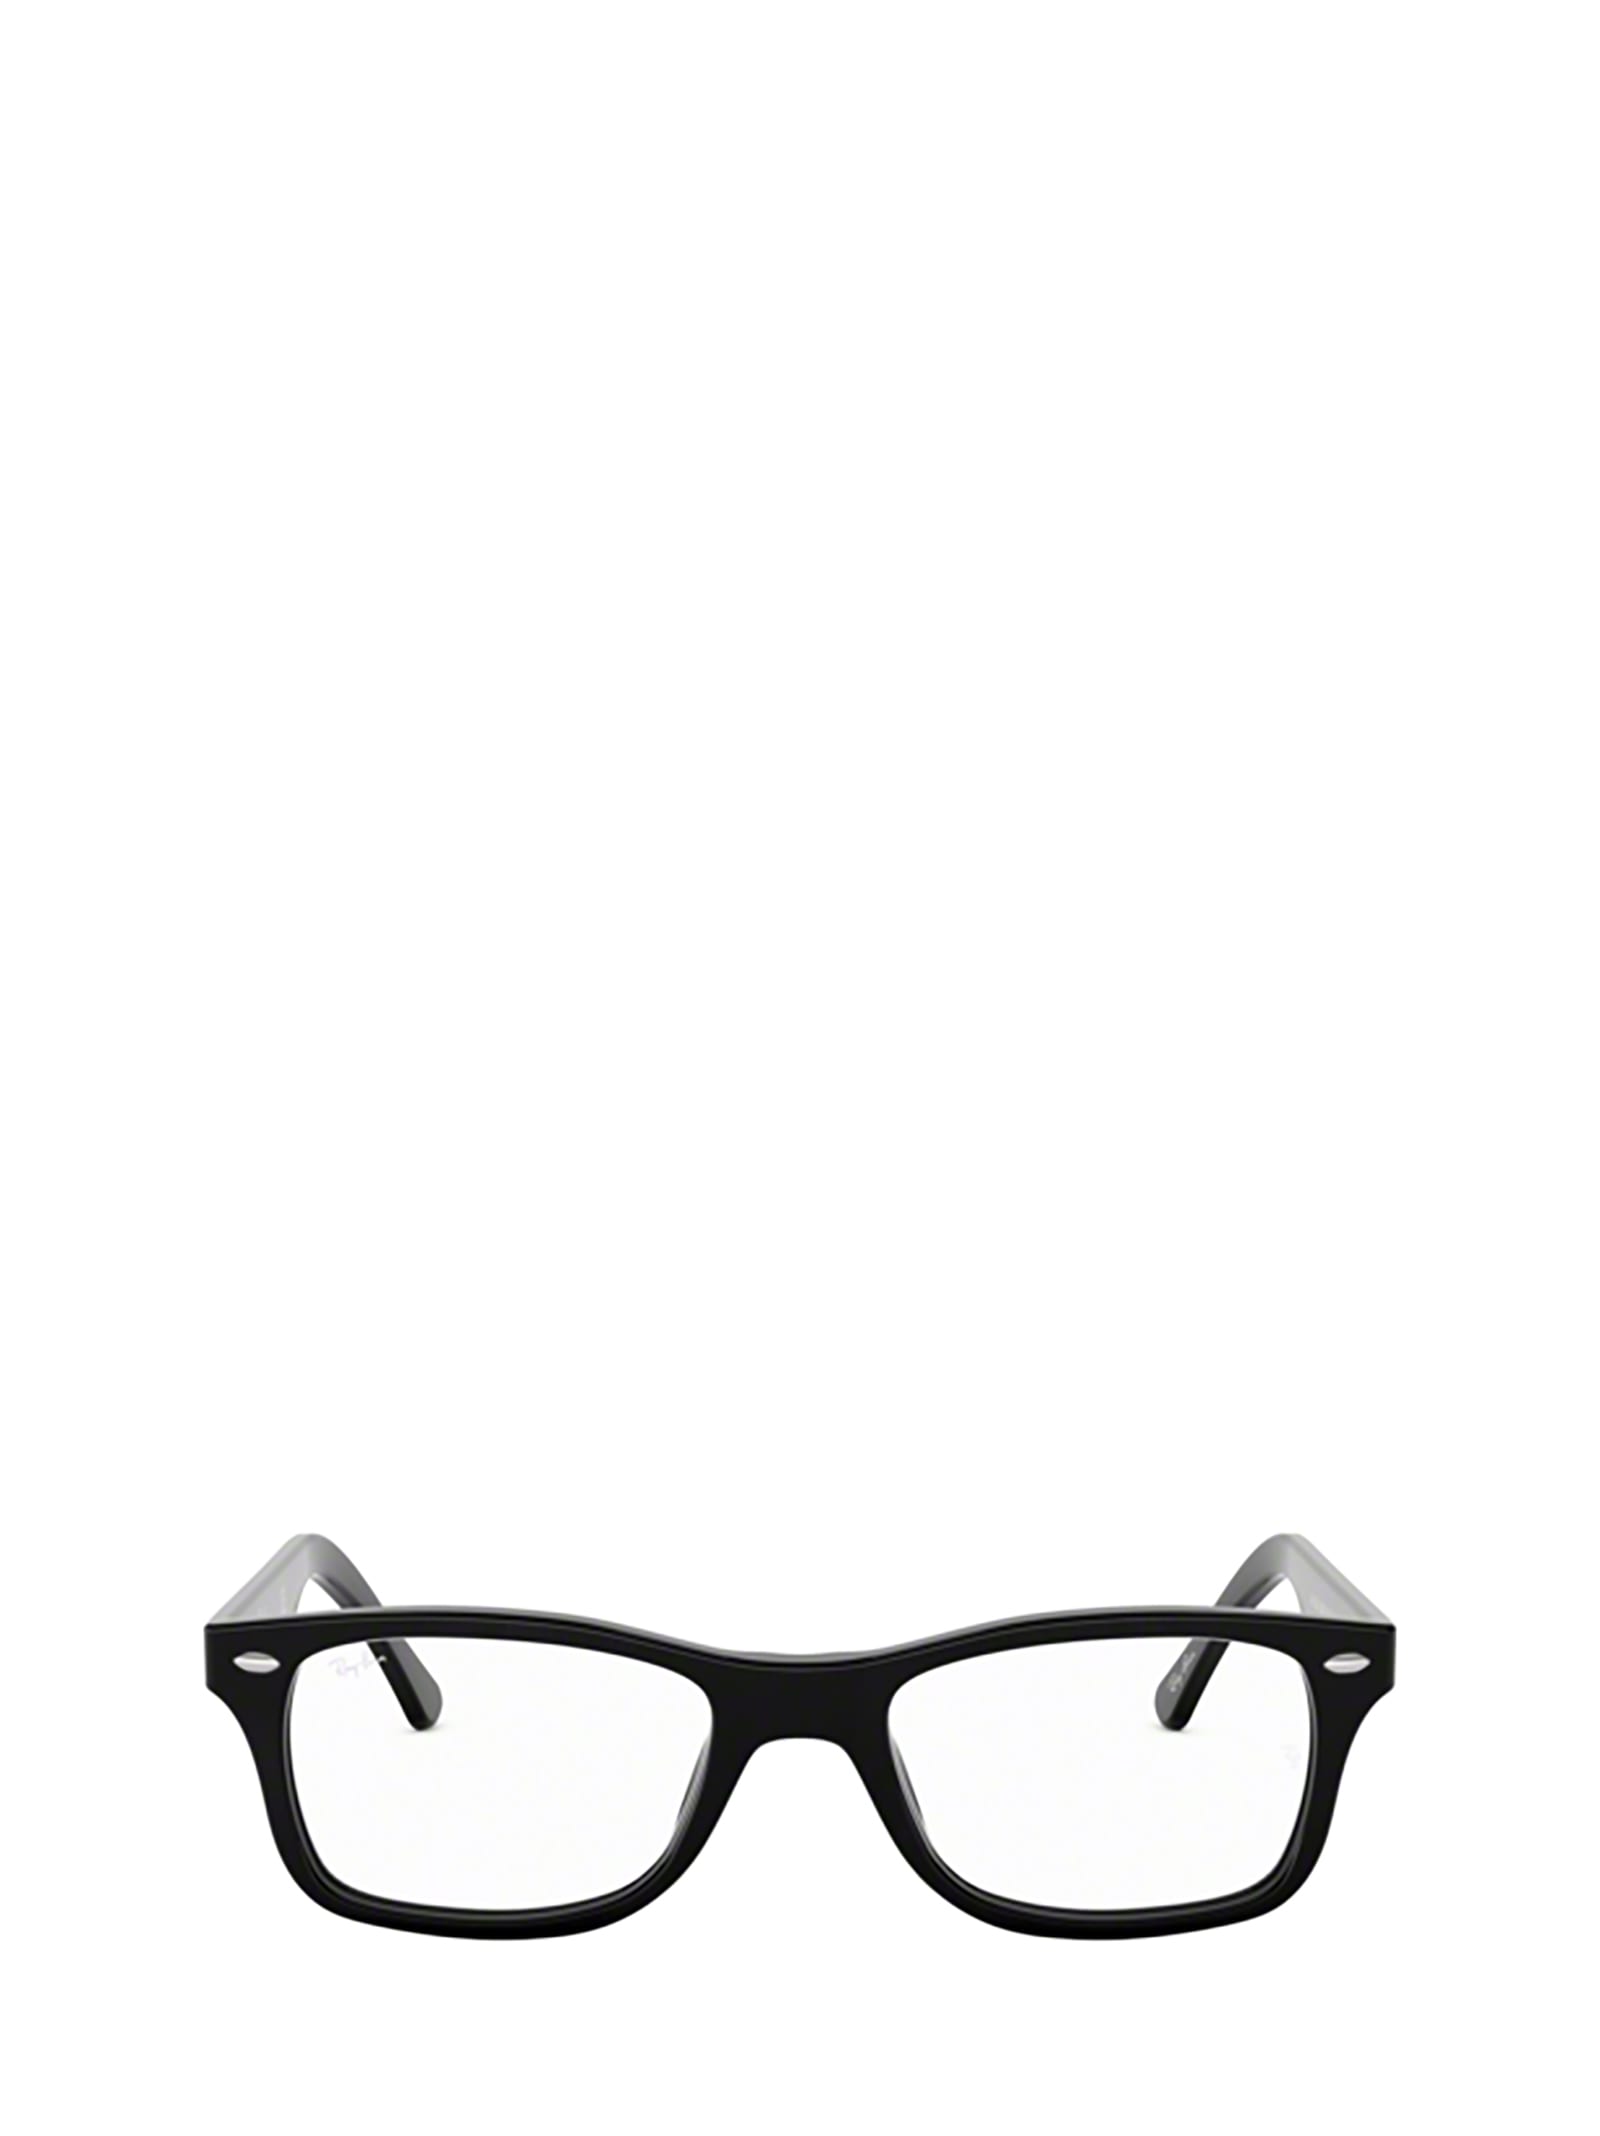 Ray Ban Ray-ban Rx5228 Black Glasses